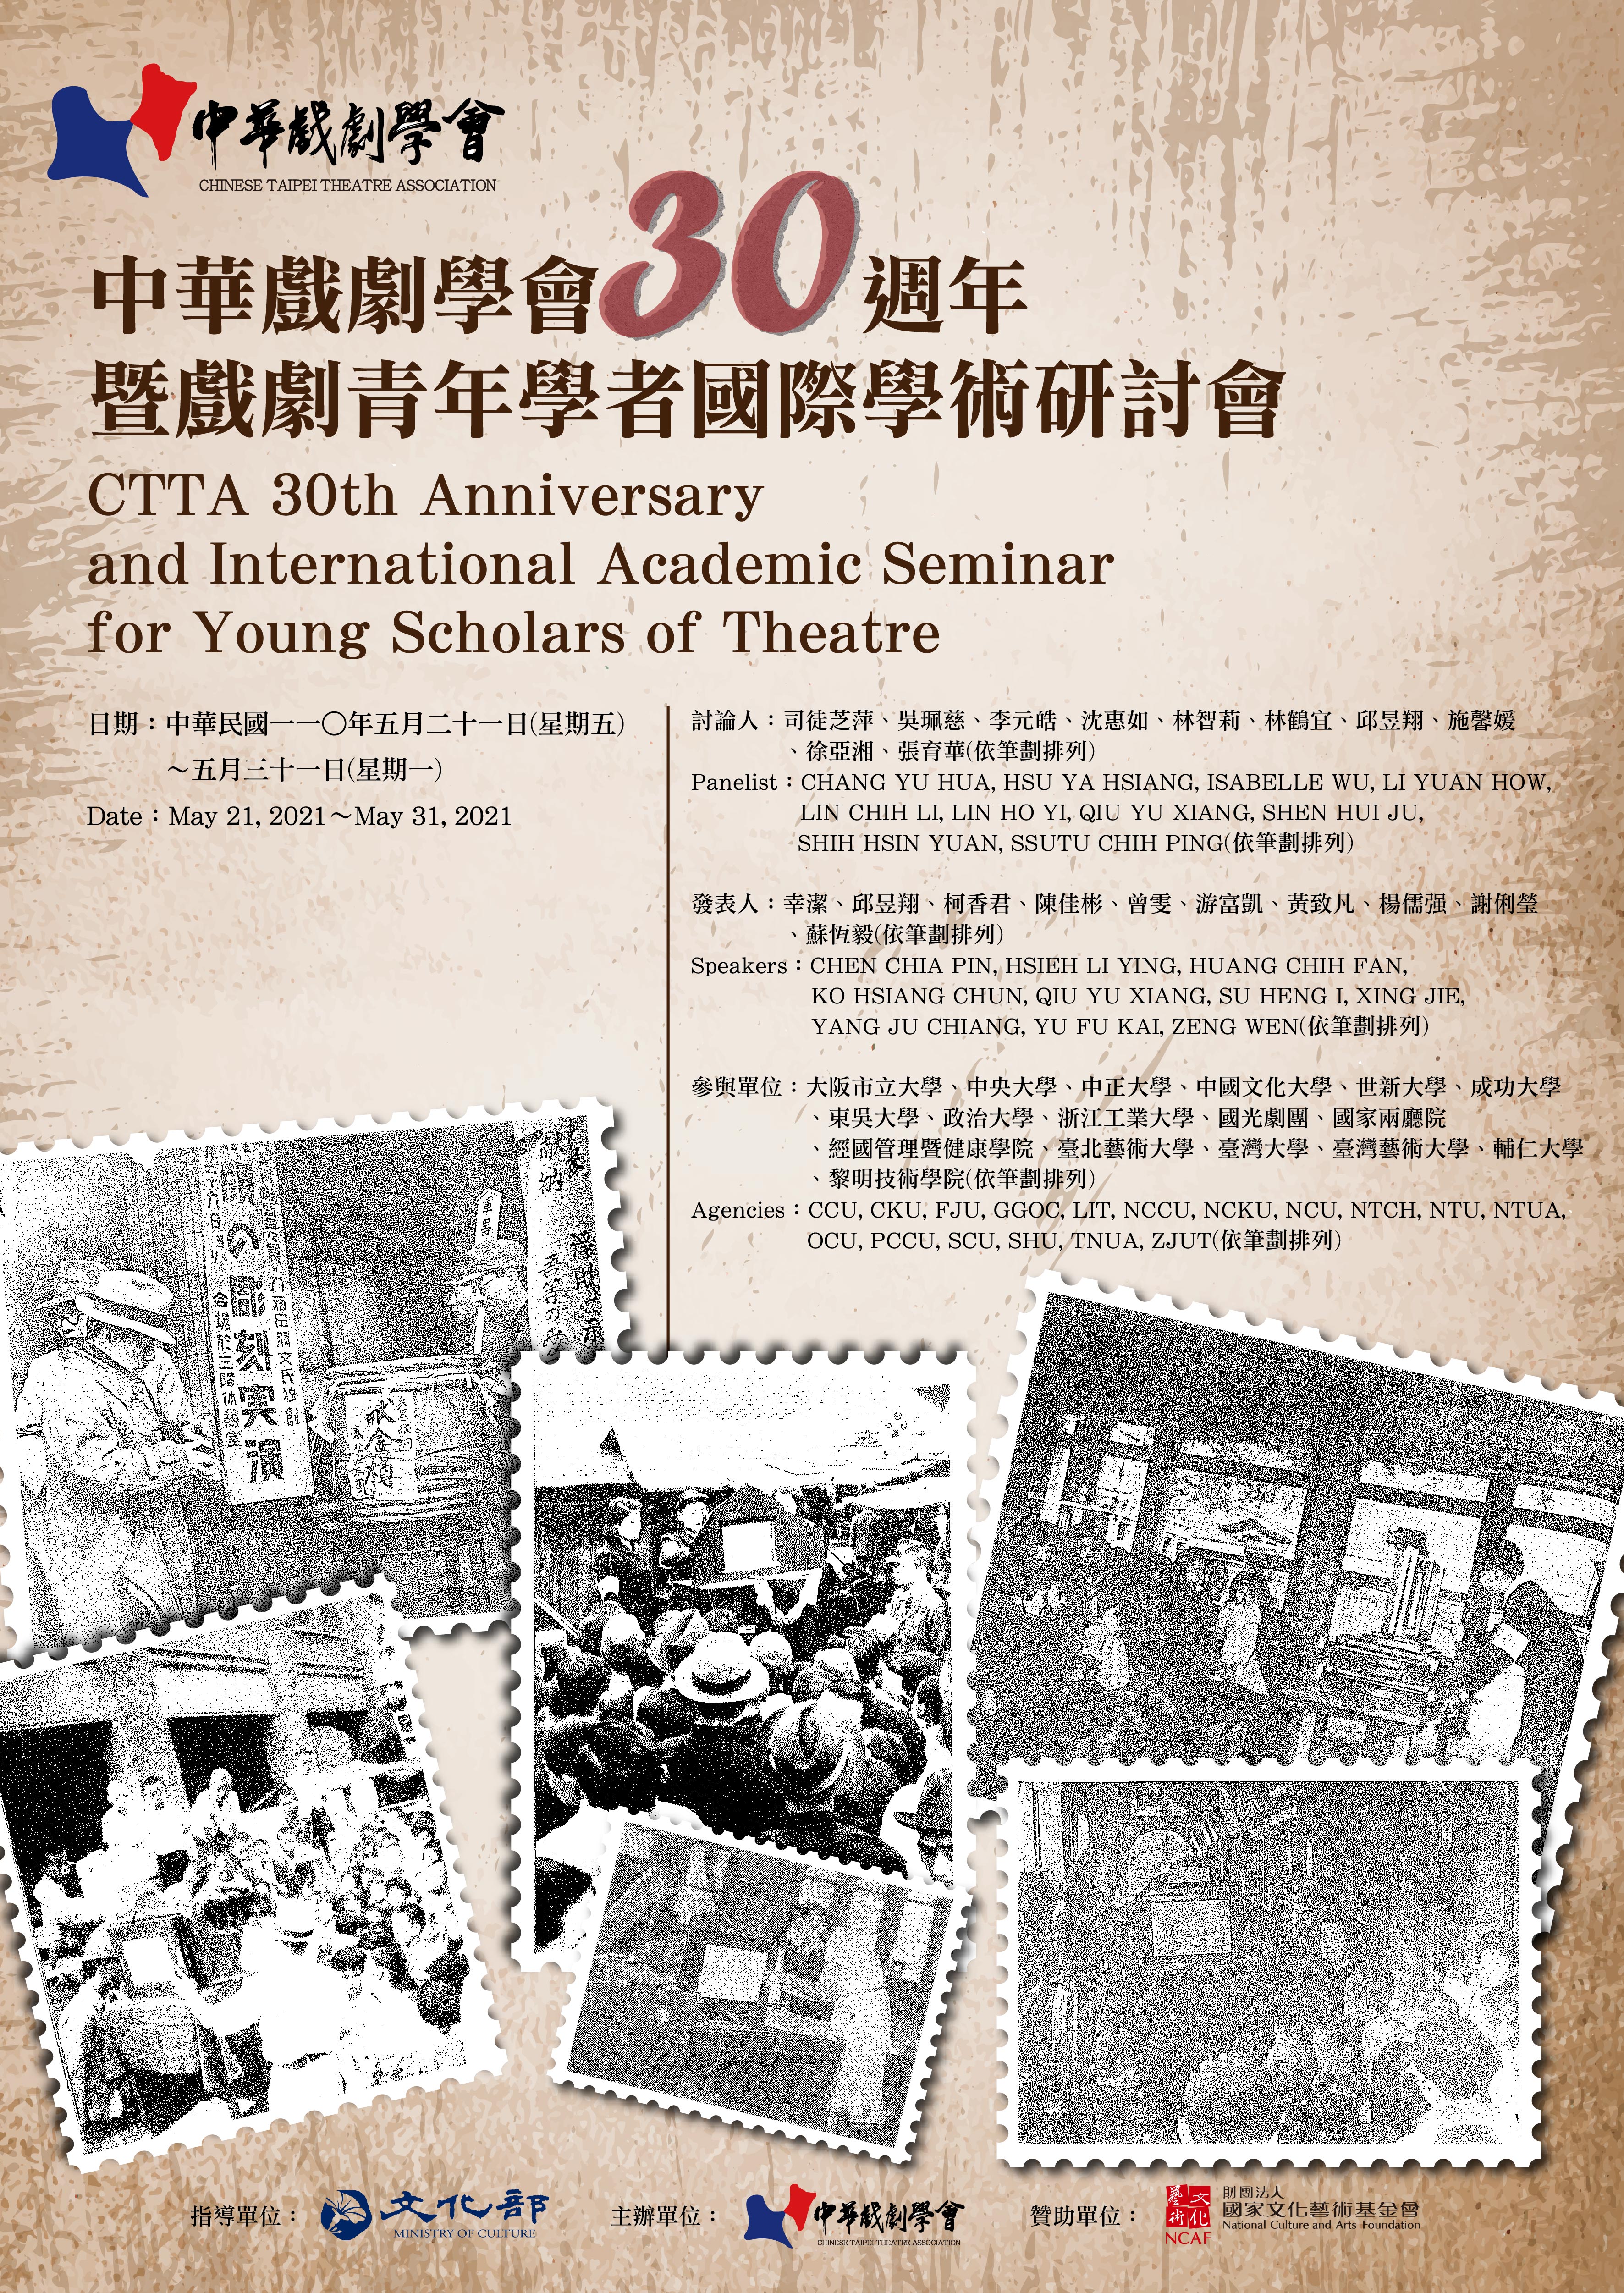 因應疫情警戒升級，中華戲劇學會30週年暨戲劇青年學者國際學術研討會改為其他方式辦理